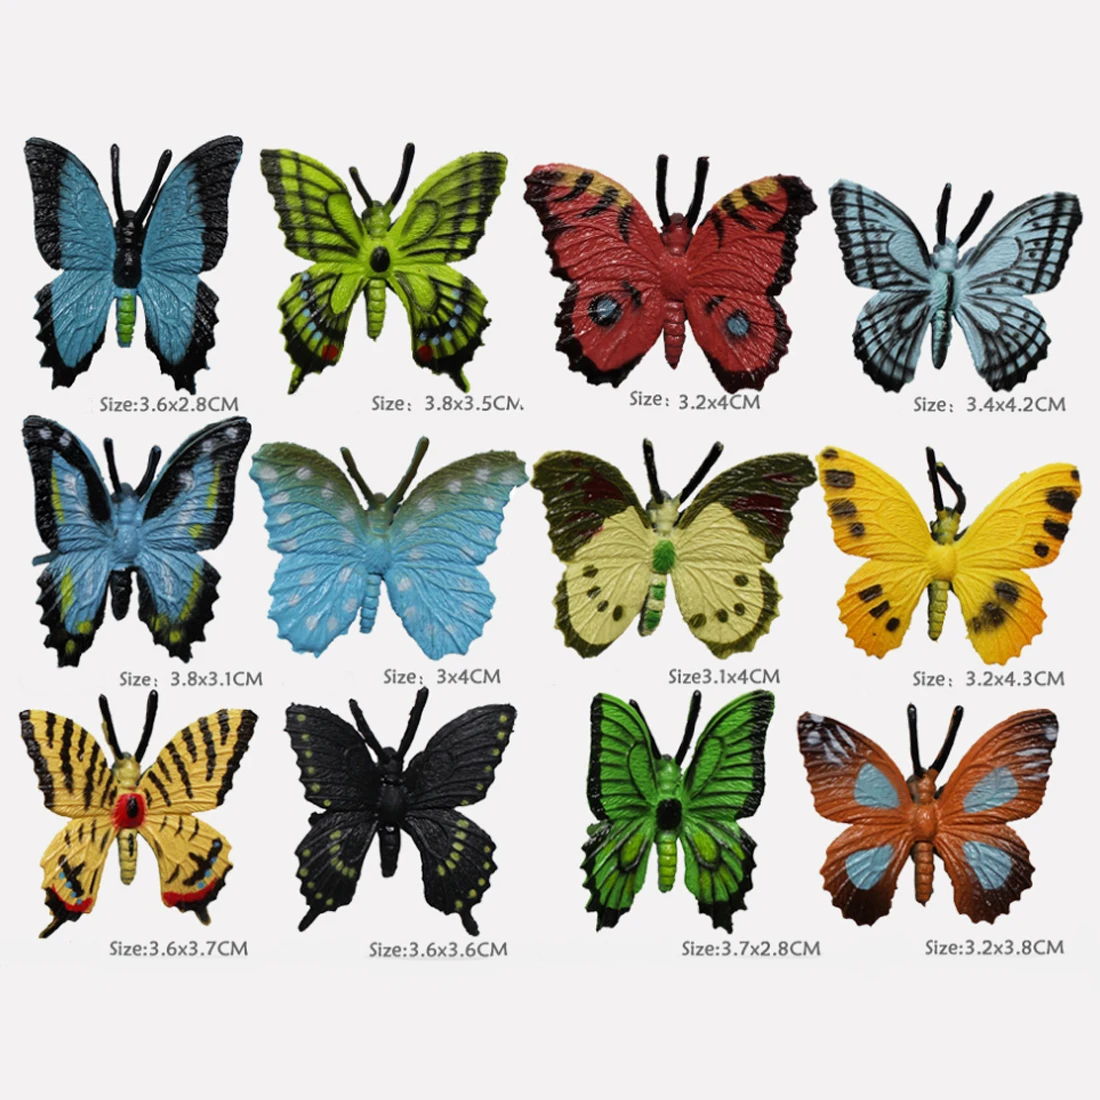 Вечерние Обучающие модели бабочки, 12 шт., обучающие игрушки для детей, Обучающие занятия по биологии, игрушки-насекомые, коллекция